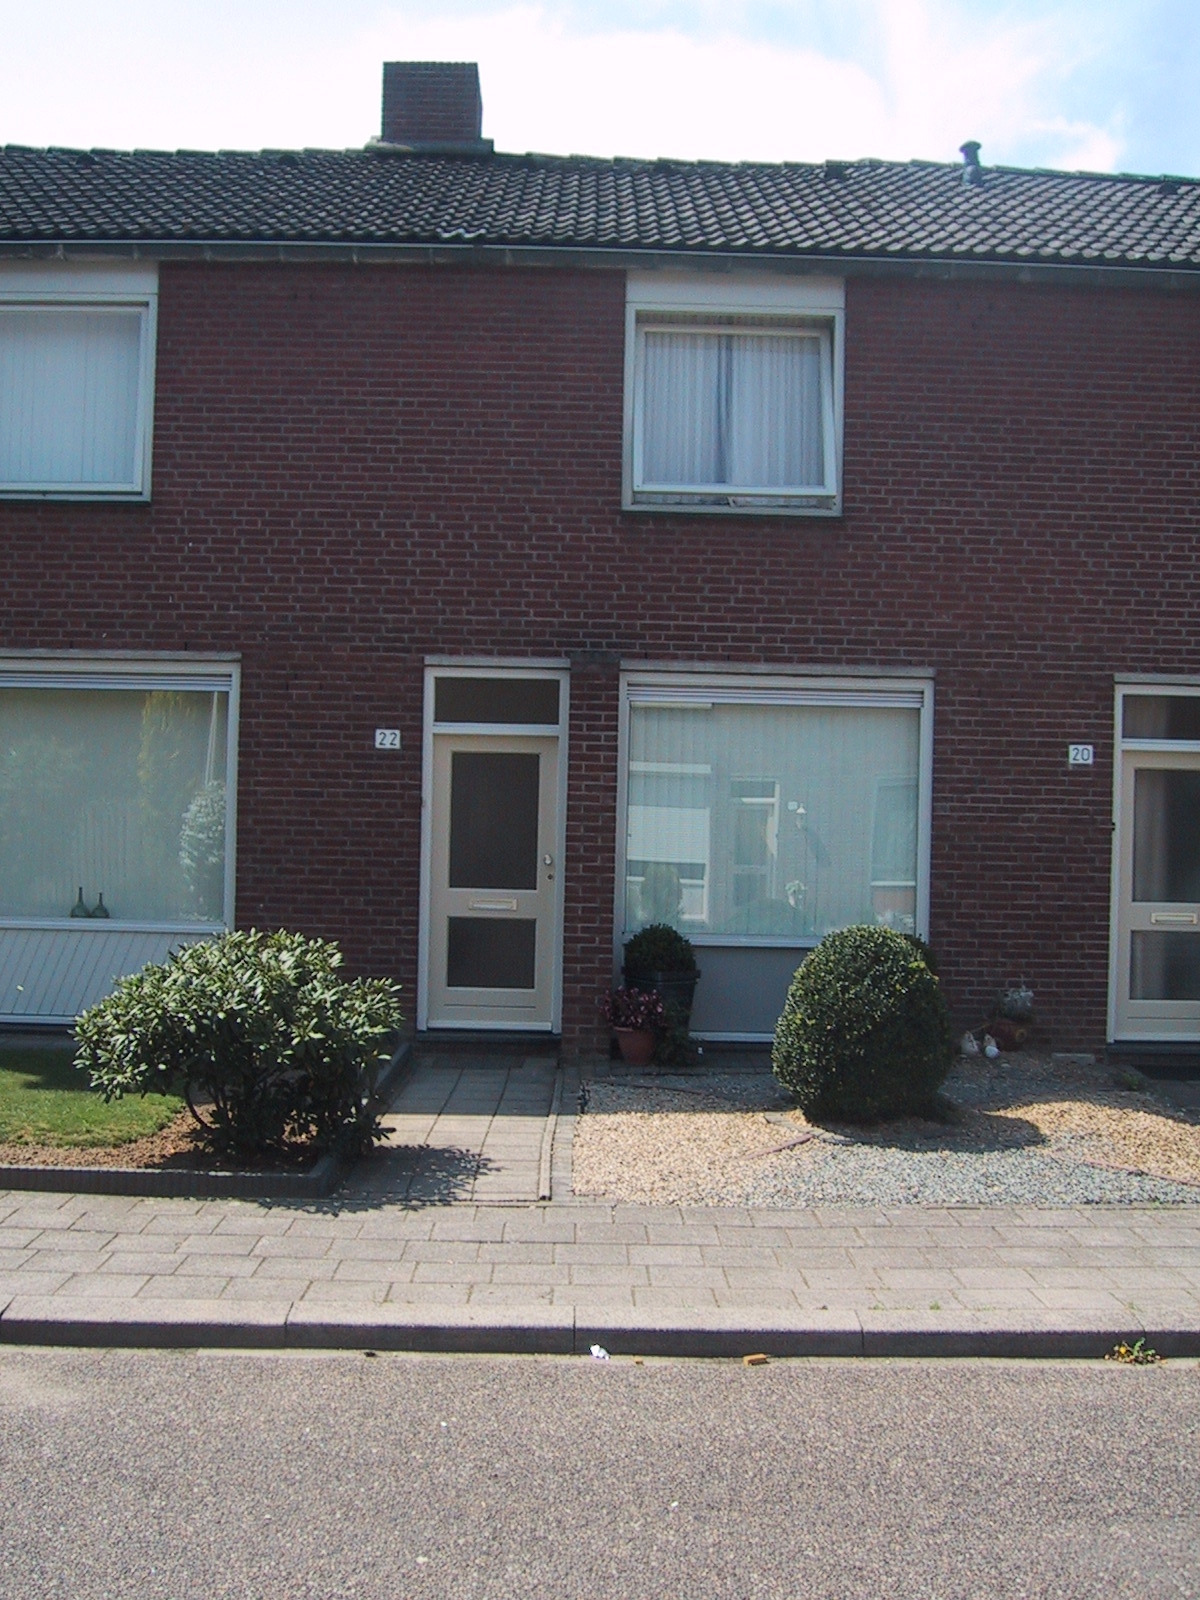 Gerard Krekelbergstraat 10, 6063 CJ Vlodrop, Nederland